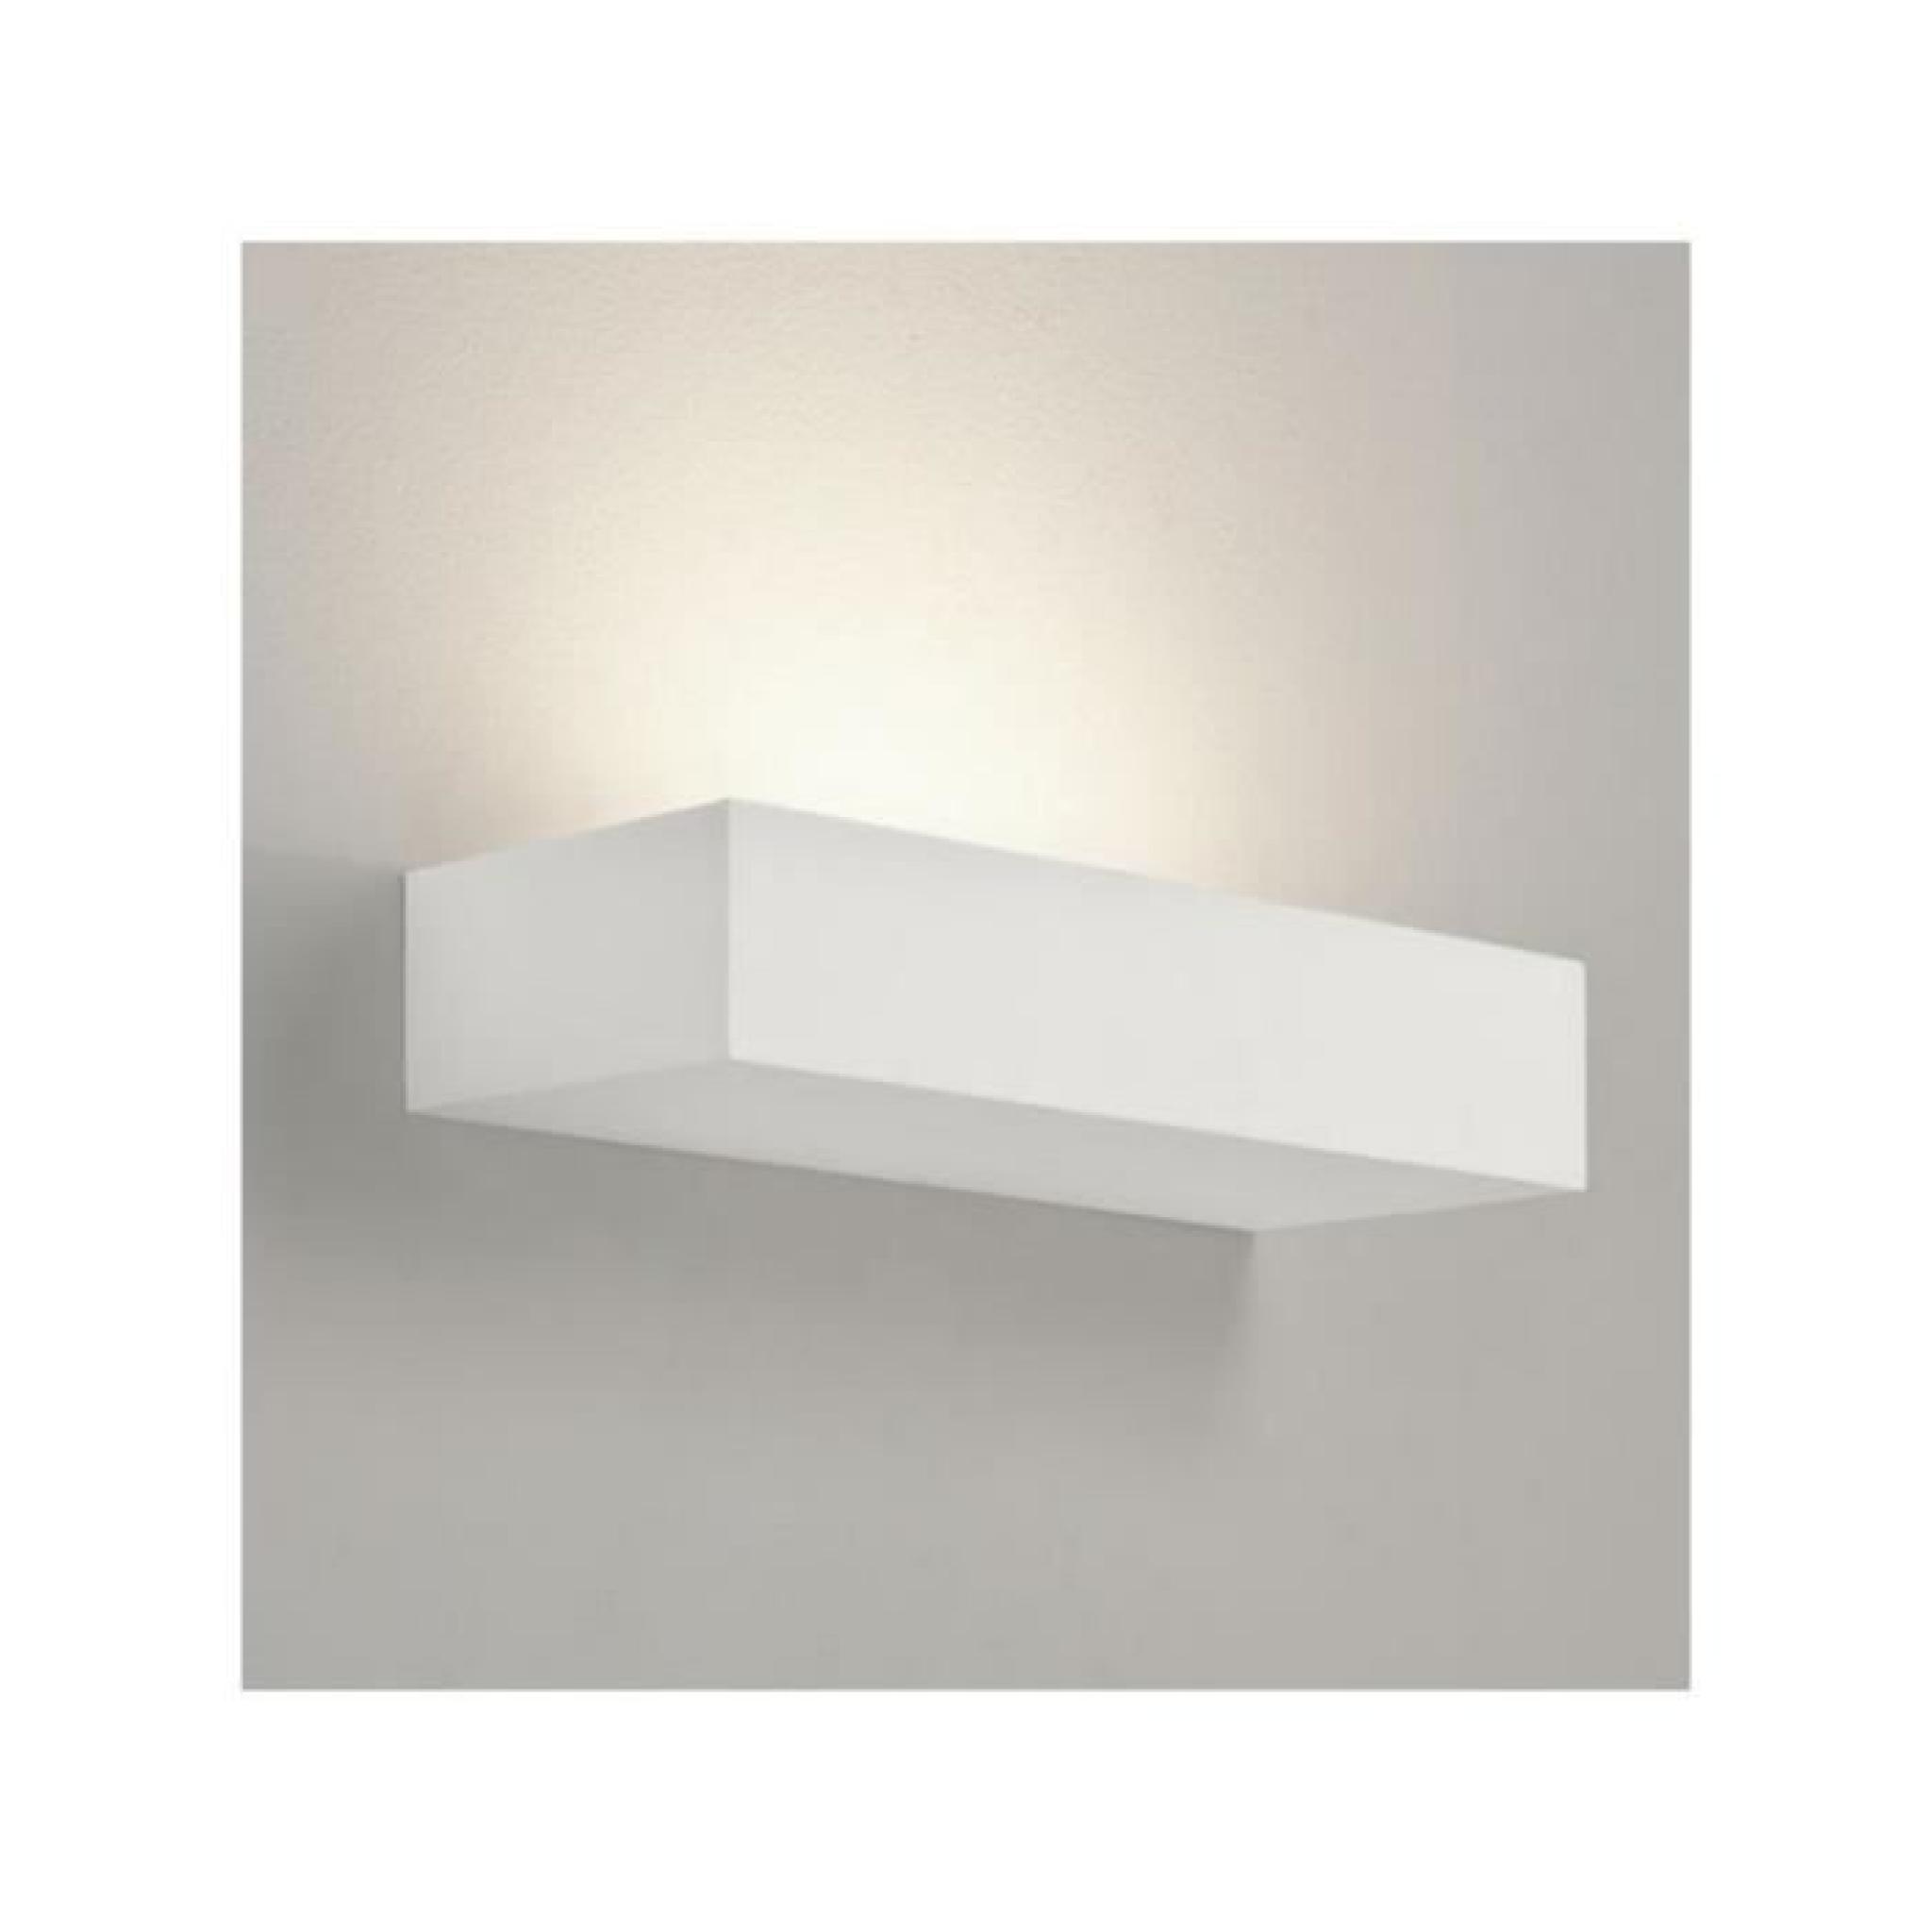 Astro Lighting - Applique rectangulaire Parma 200 - Blanc